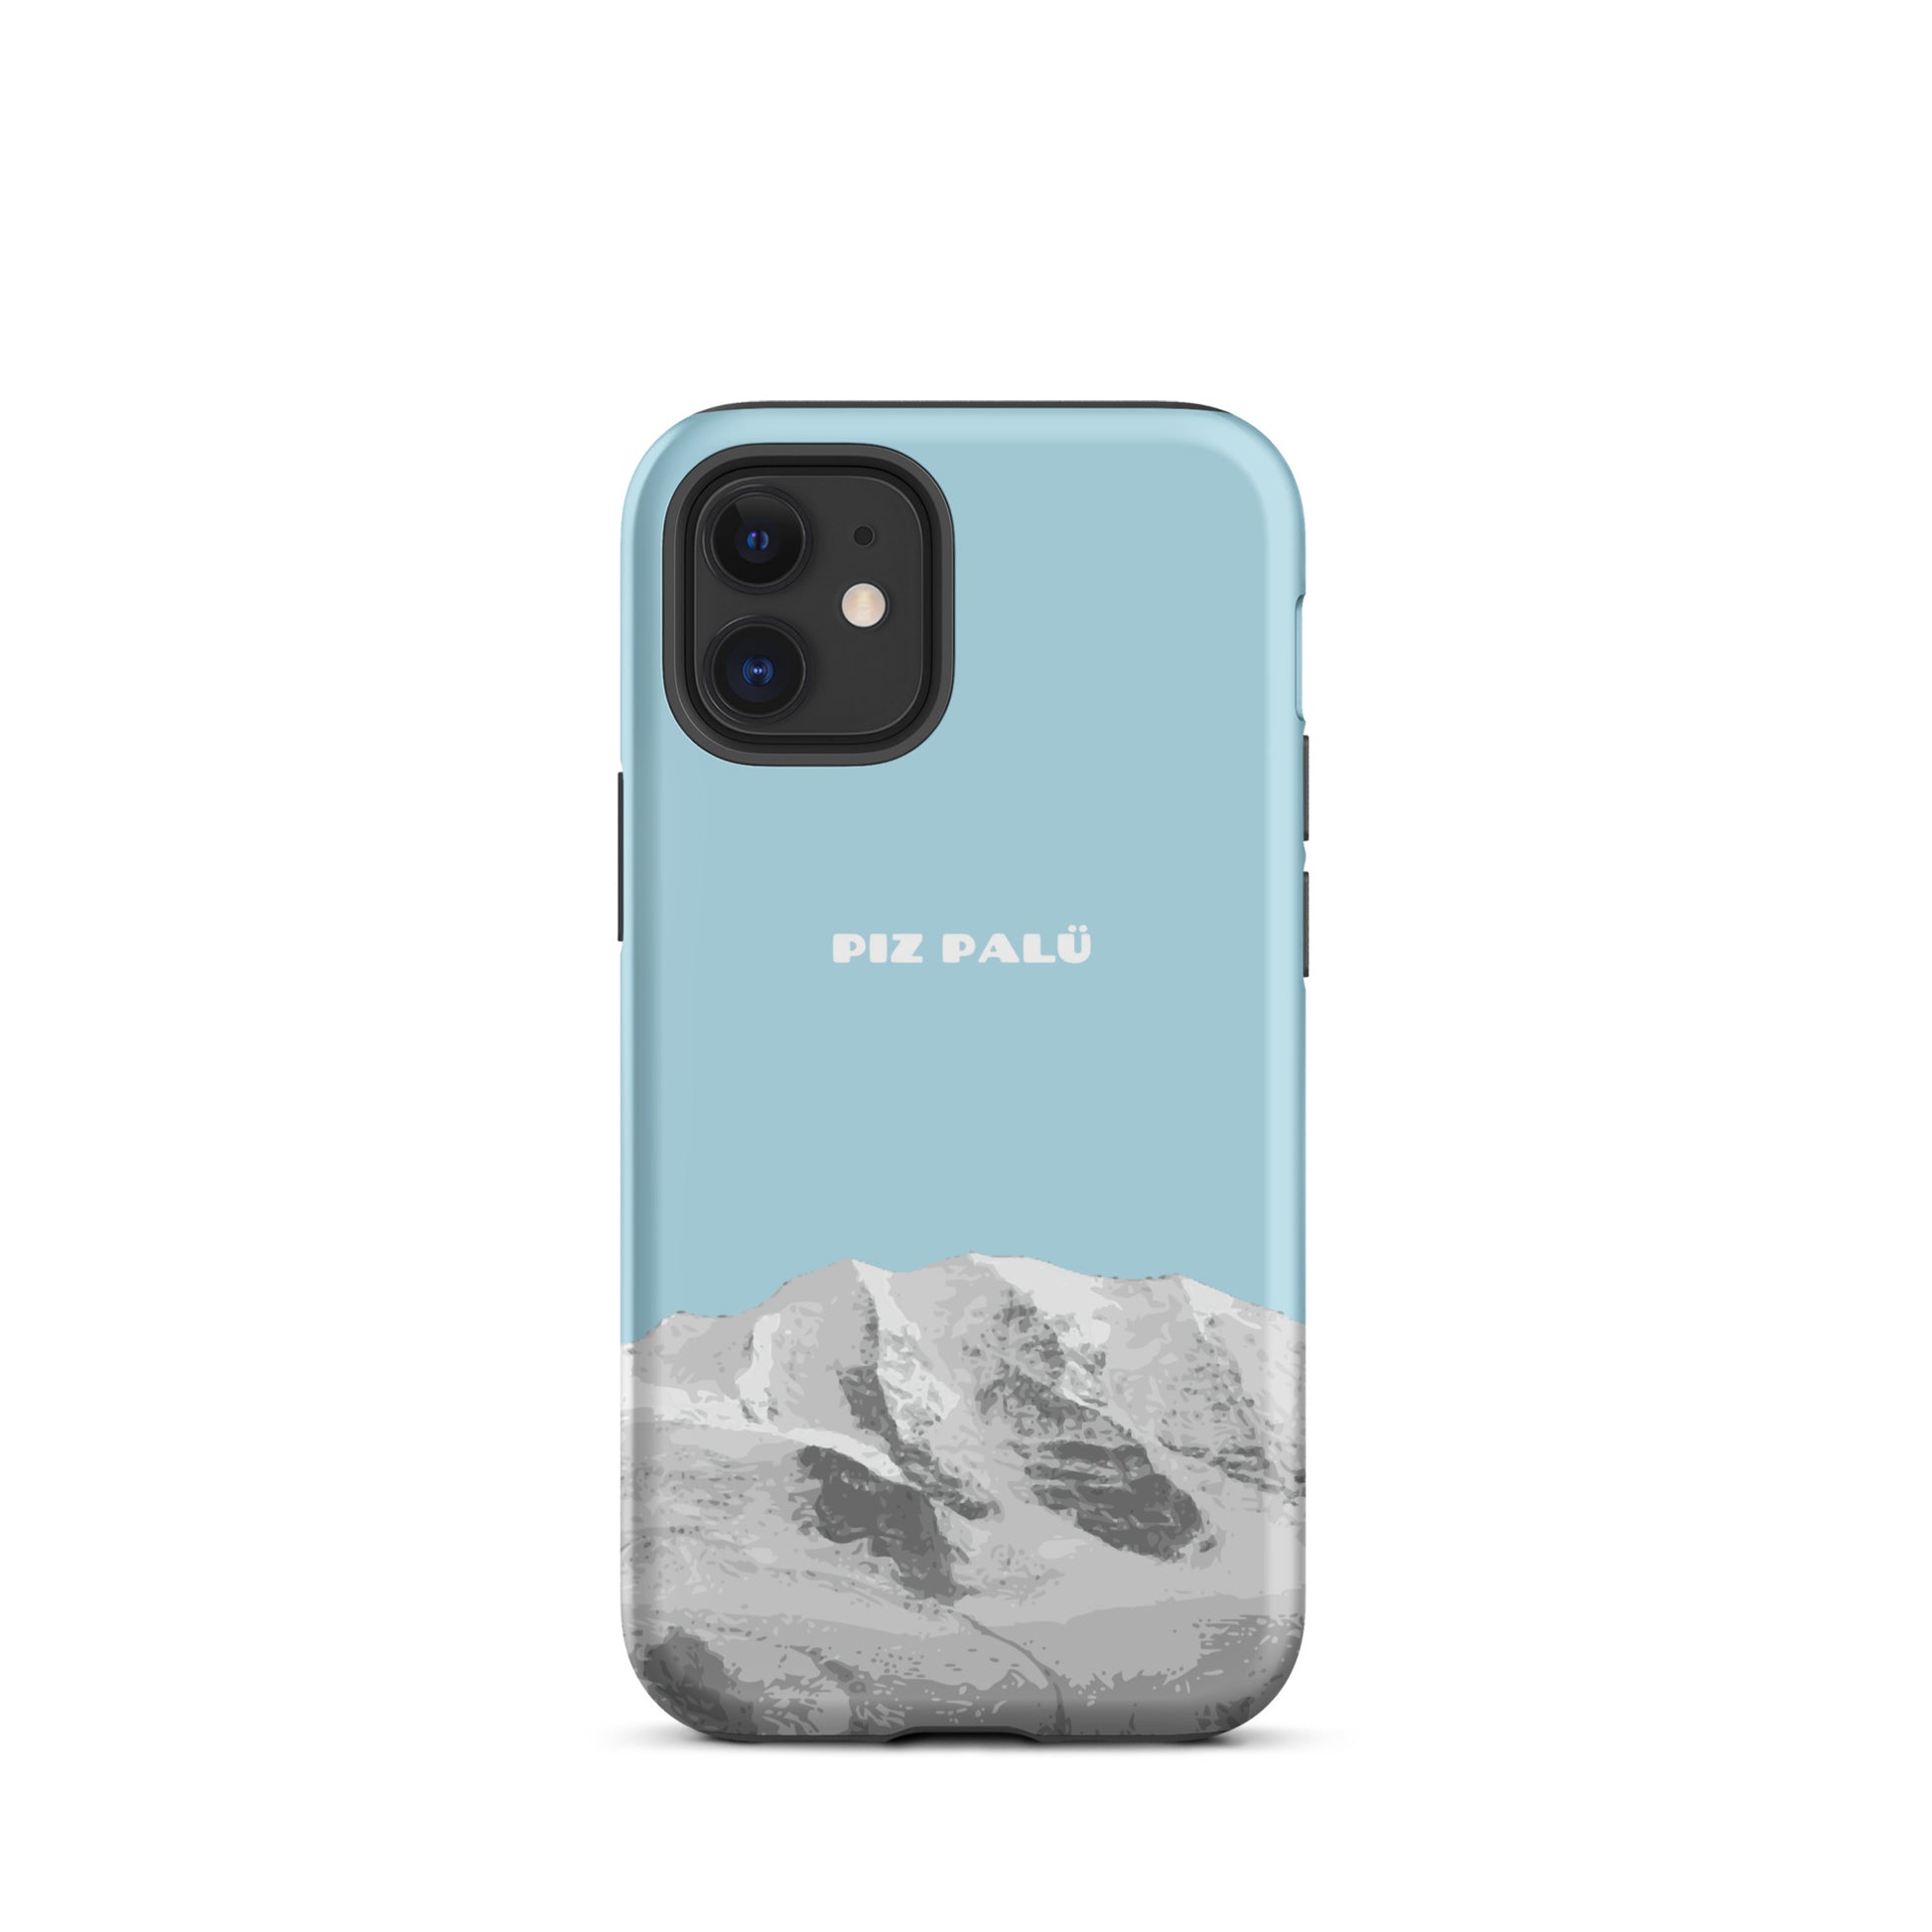 Hülle für das iPhone 12 Mini von Apple in der Farbe Hellblau, dass den Piz Palü in Graubünden zeigt.